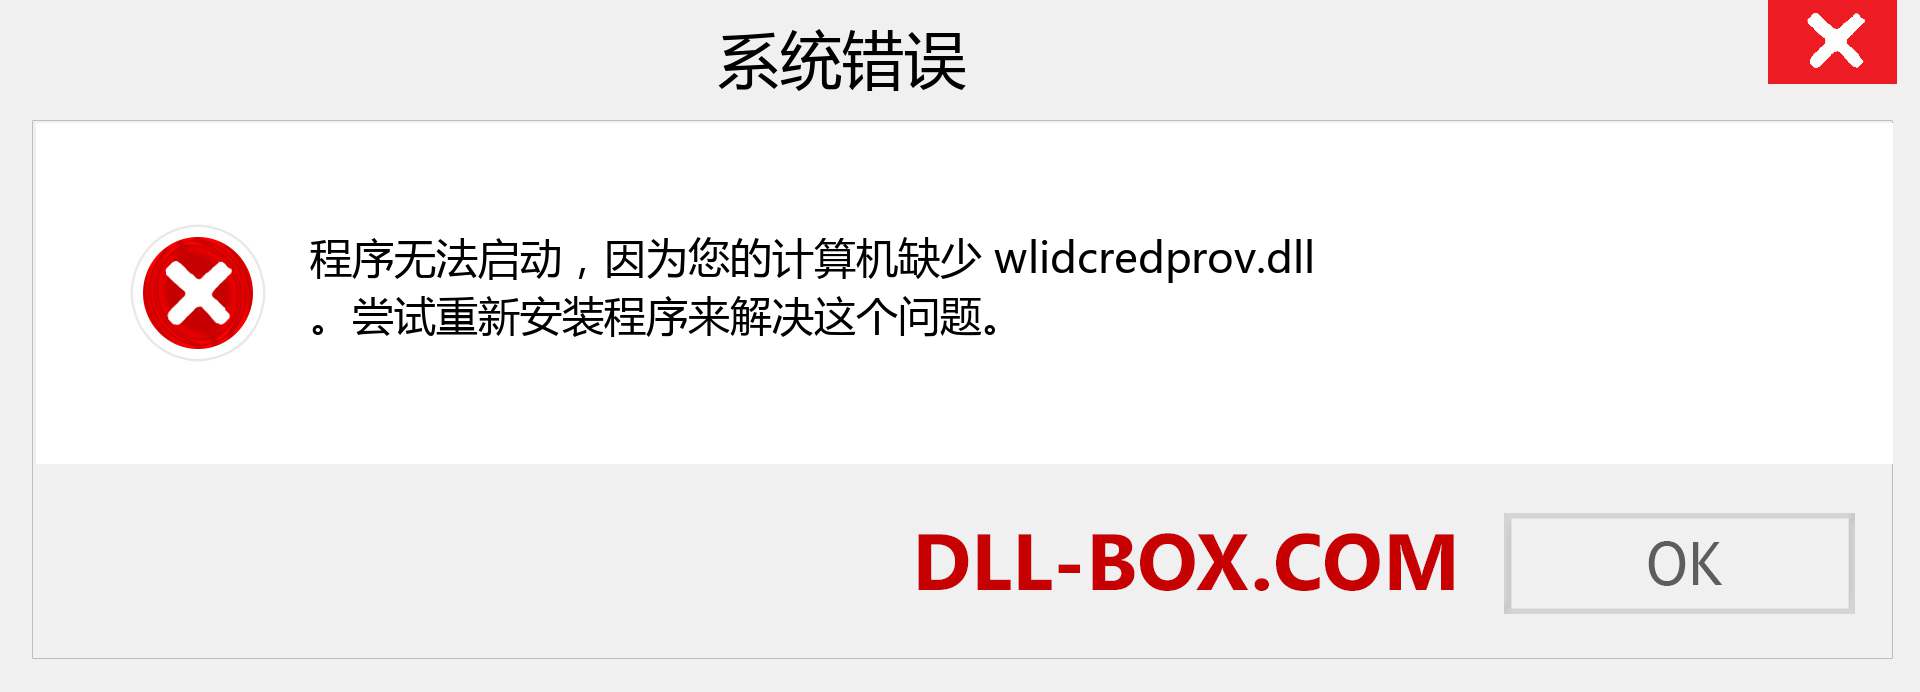 wlidcredprov.dll 文件丢失？。 适用于 Windows 7、8、10 的下载 - 修复 Windows、照片、图像上的 wlidcredprov dll 丢失错误